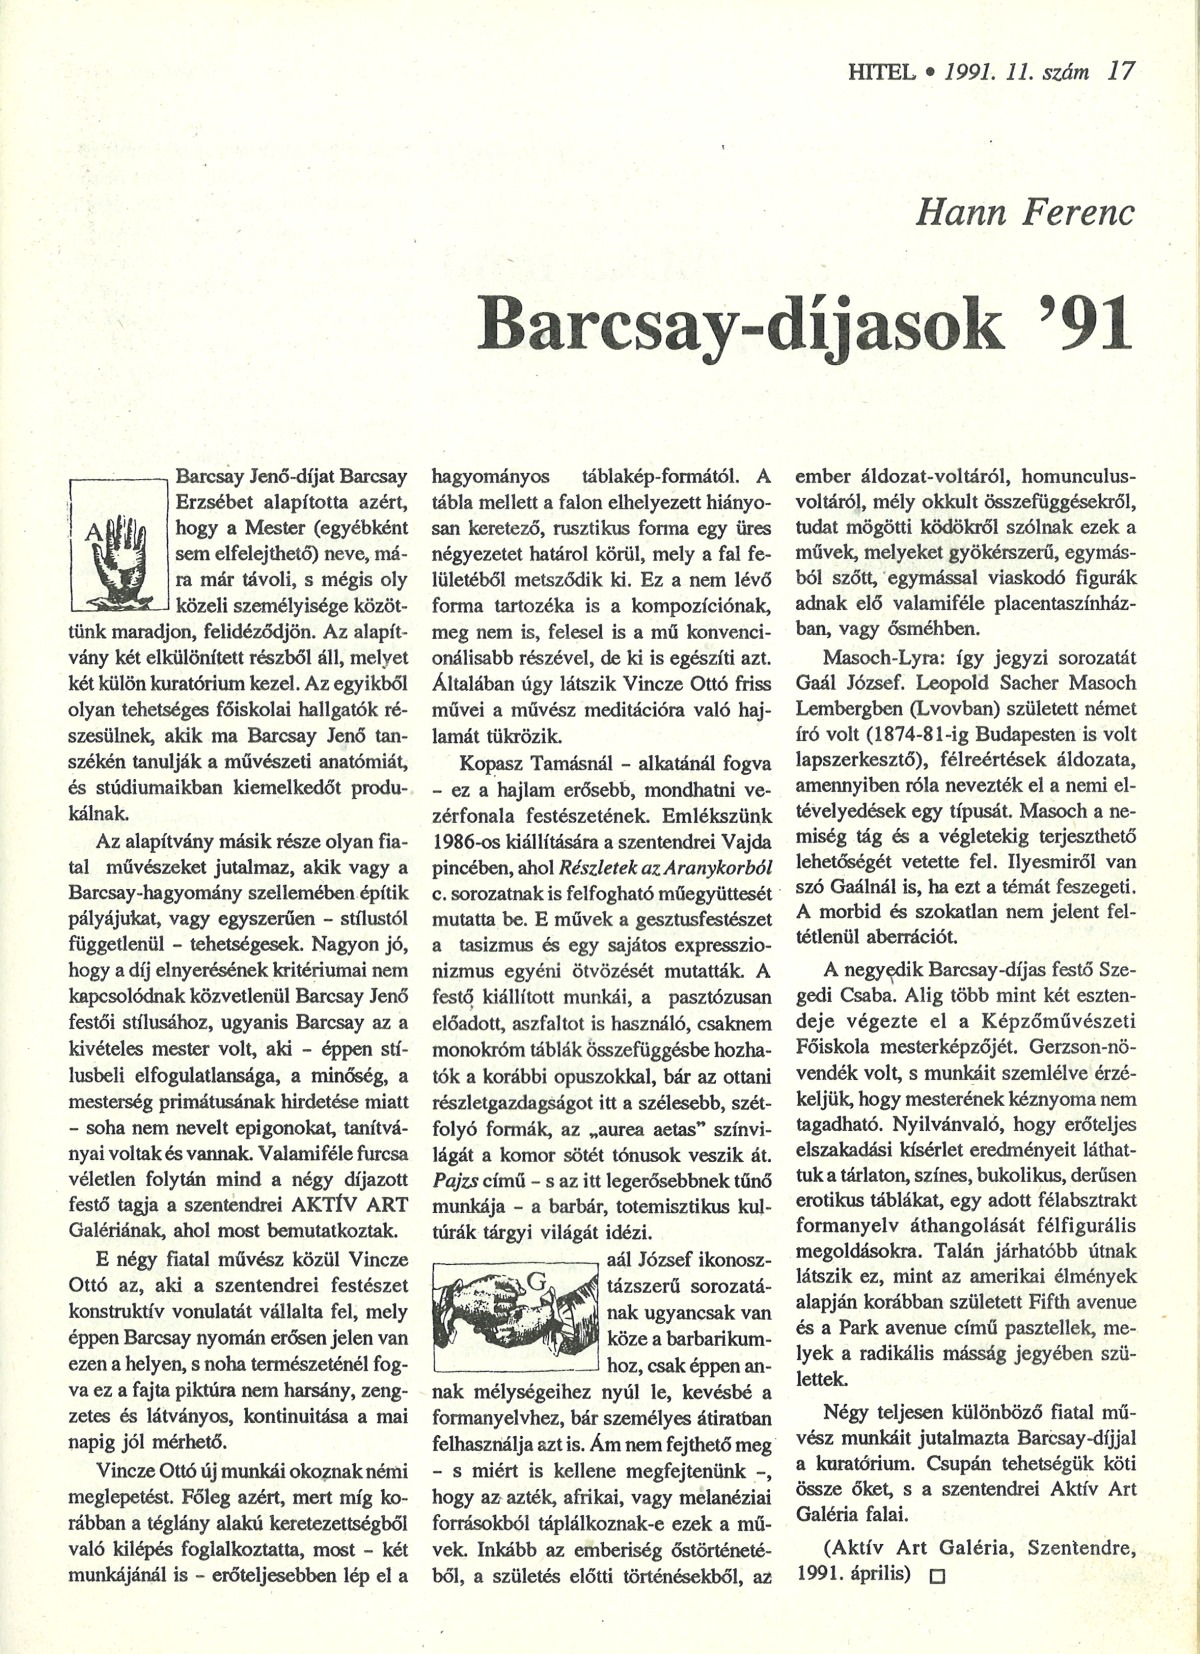 Hann Ferenc: Barcsay-díjasok ’91, Hitel